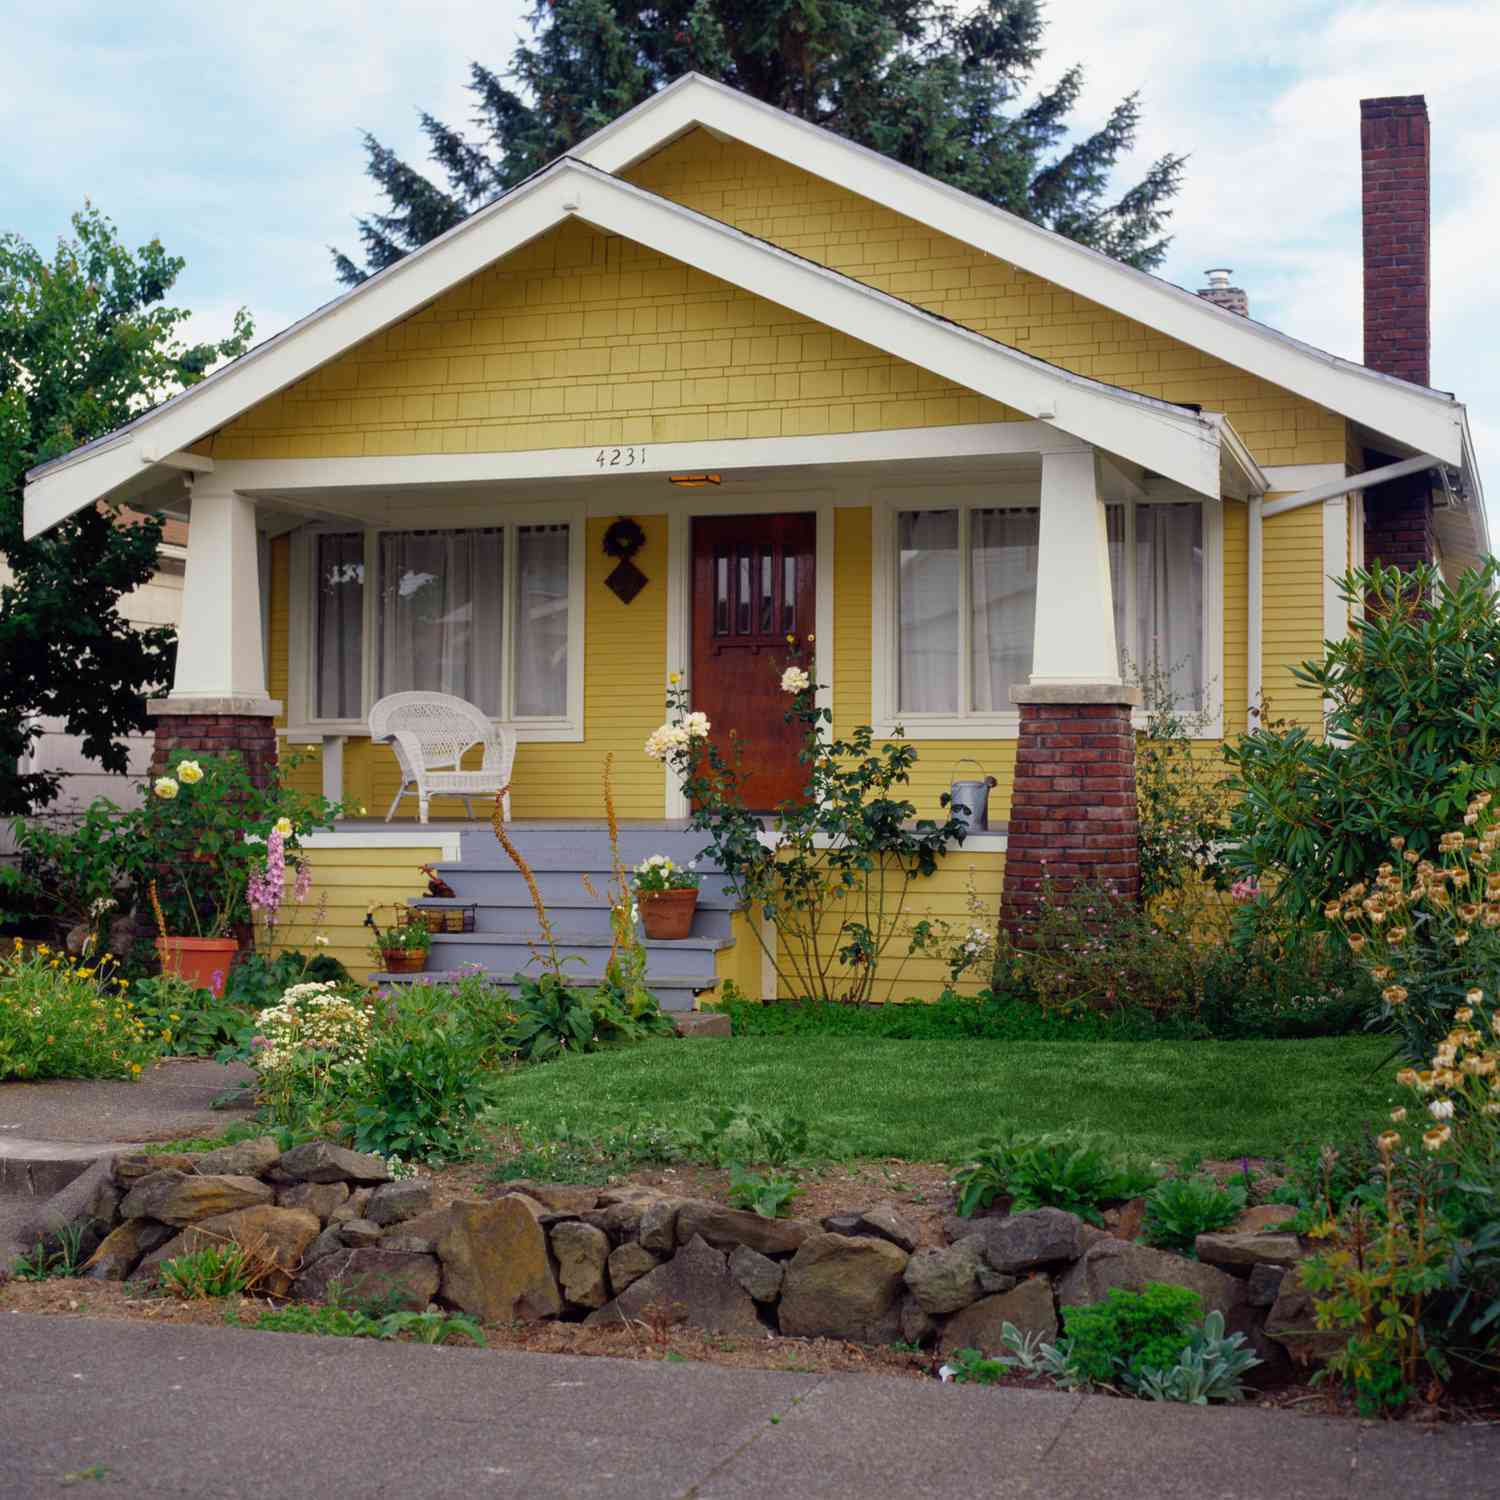 Casa estilo bungalow amarillo con jardín, vista exterior